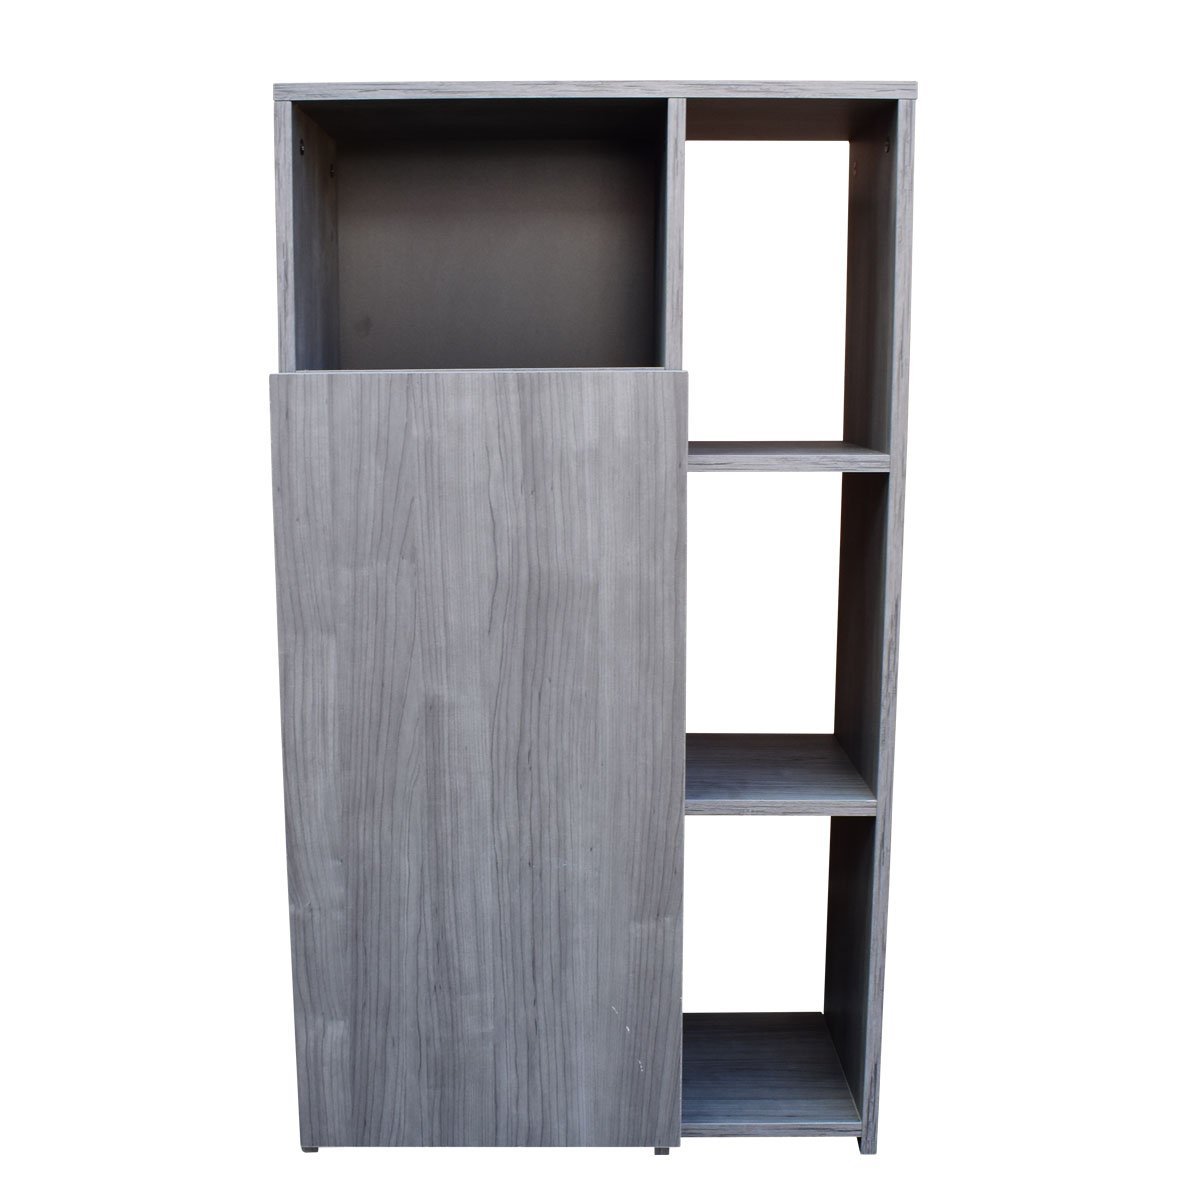 Renovatio Home Design - Los armarios despenseros son armarios multiusos. En  función de las medidas y la organización interior del mueble puedes  utilizarlos para guardar una gran cantidad de objetos. #RenuevaTuEstilo